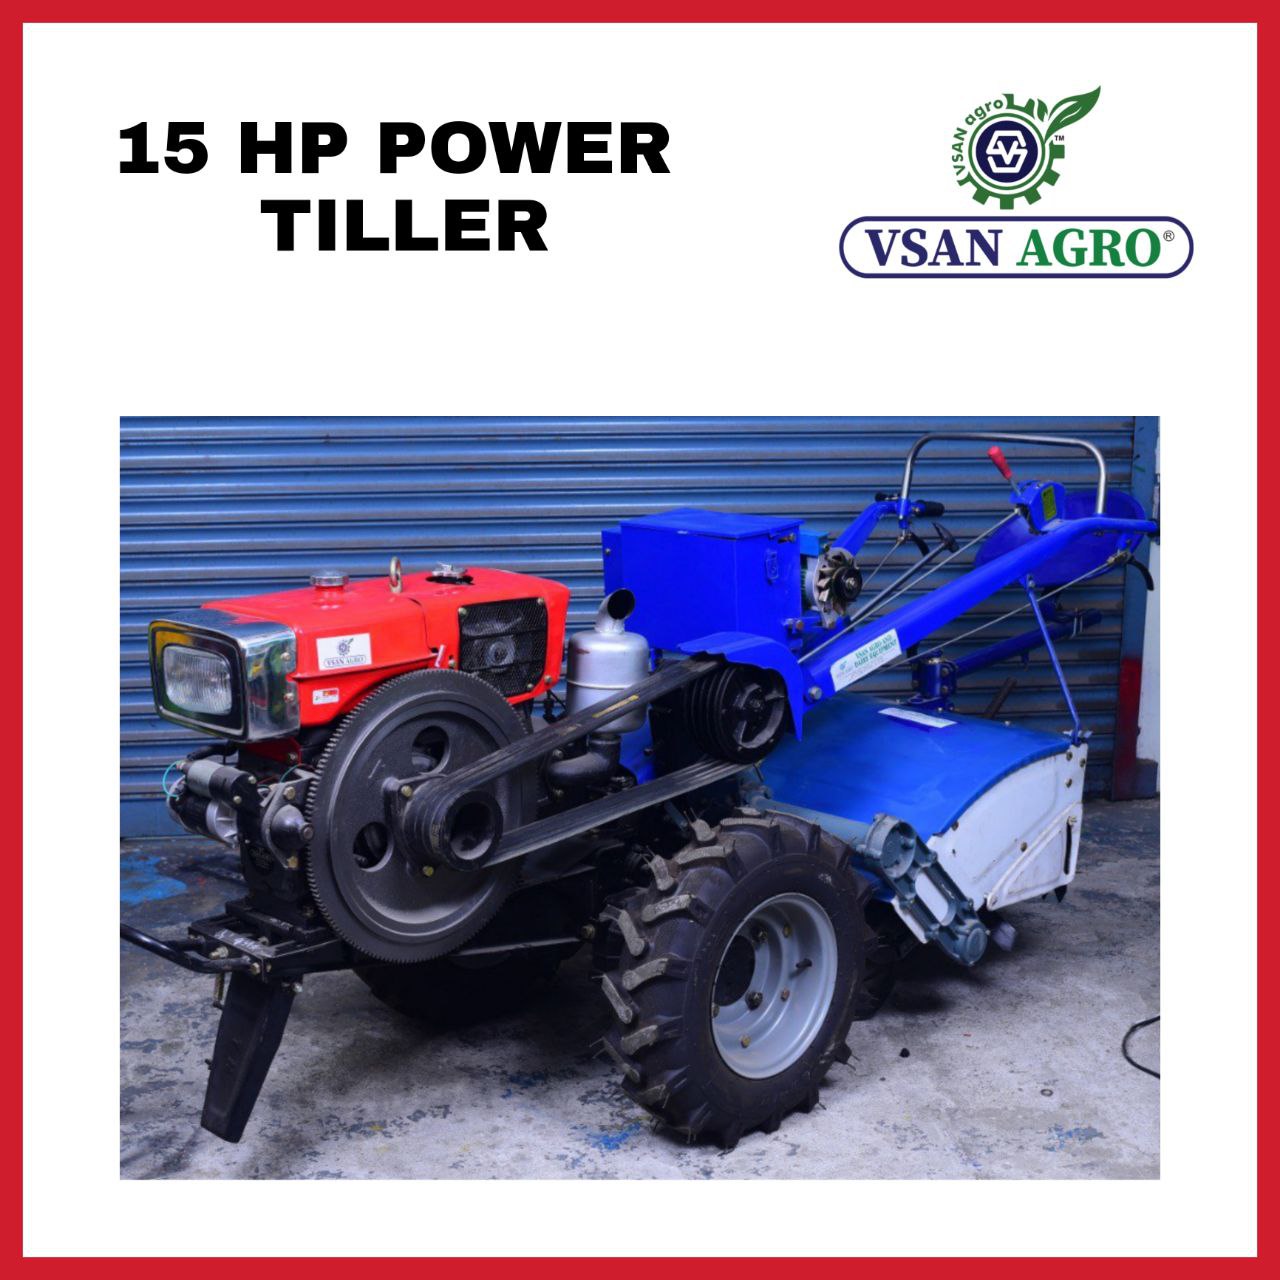 POWER TILLER – 15 HP POWER TILLER